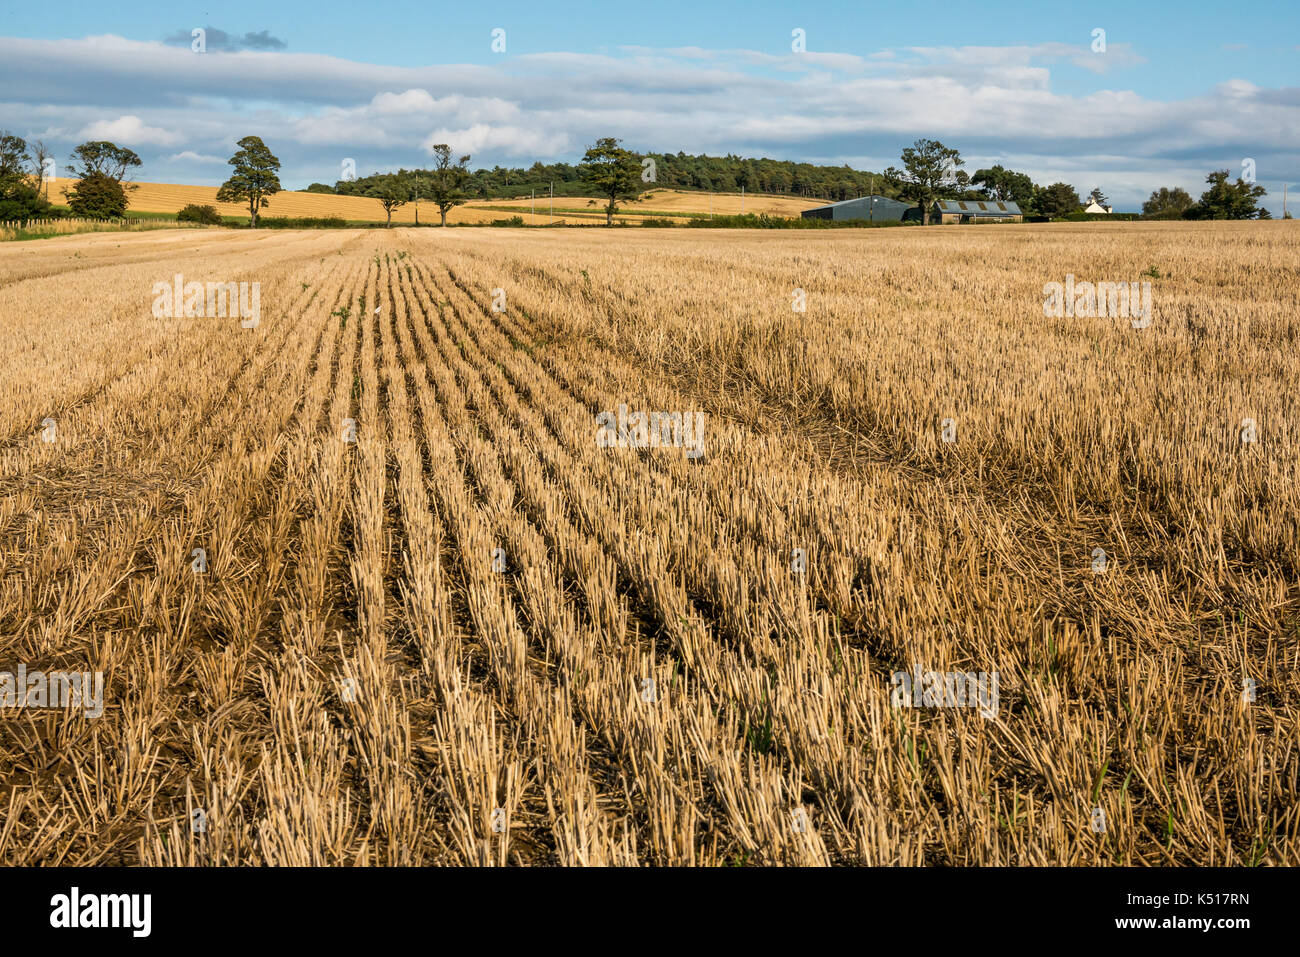 Paisaje de campo de cultivos de grano cosechado con lejanos edificios agrícolas, árboles y cielo azul en el paisaje agrícola rural, East Lothian, Escocia, Reino Unido Foto de stock